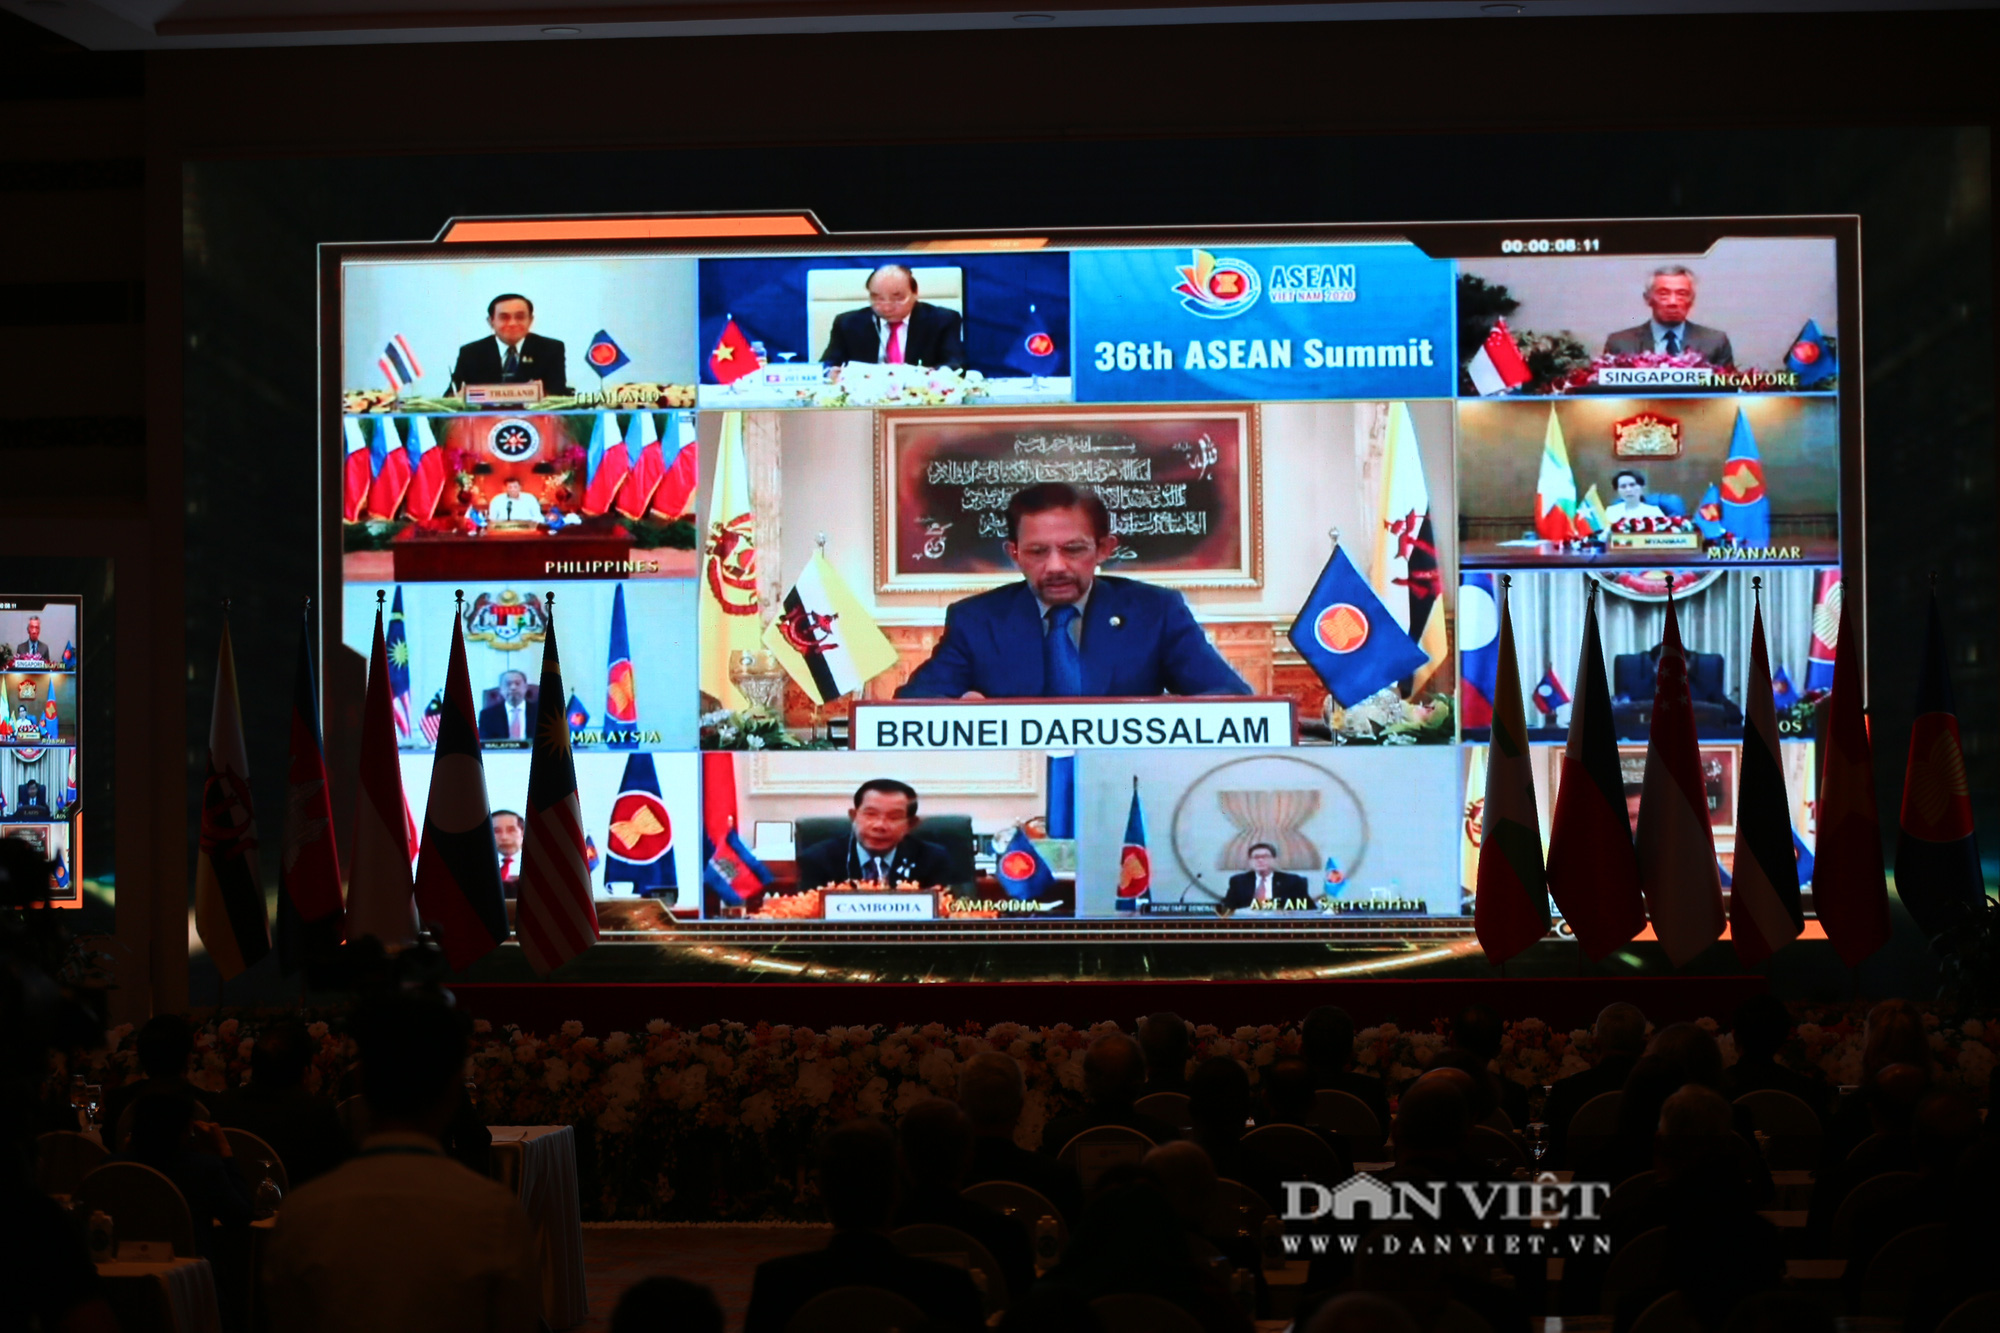 Bế mạc Hội nghị Cấp cao ASEAN 37 và chuyển giao vai trò Chủ tịch ASEAN - Ảnh 7.